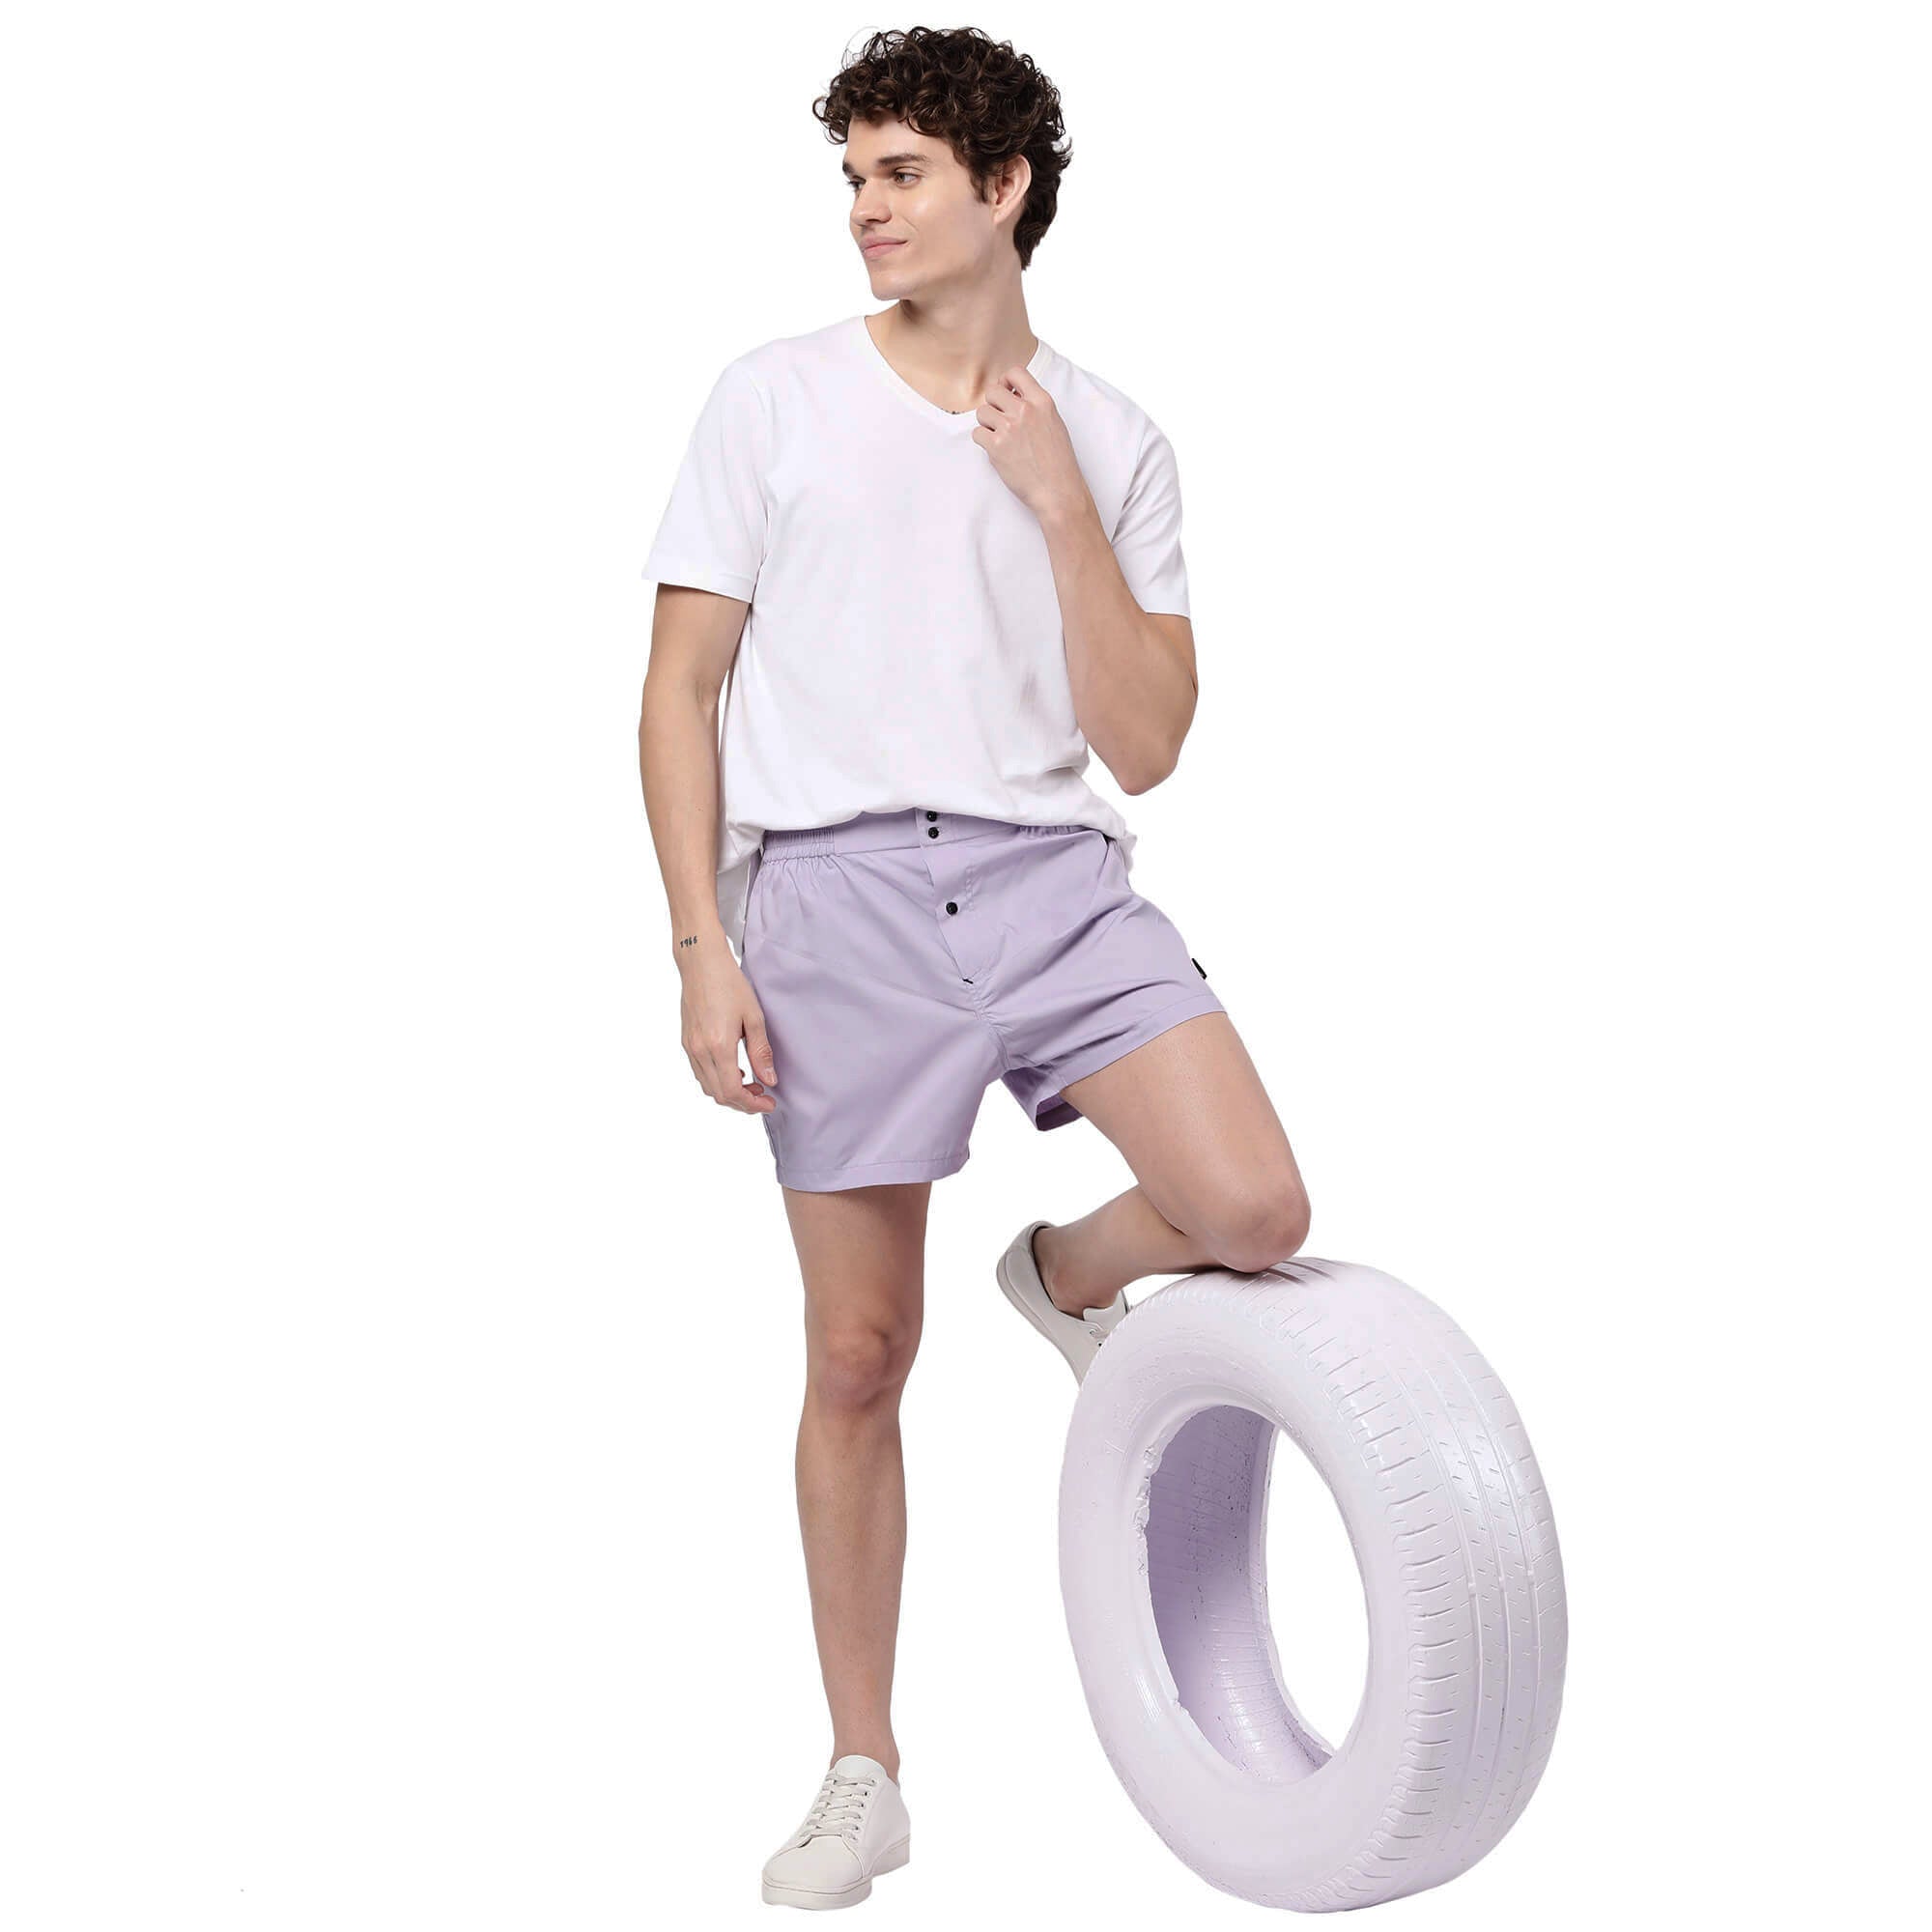 Lavender Solid Shorts for Men